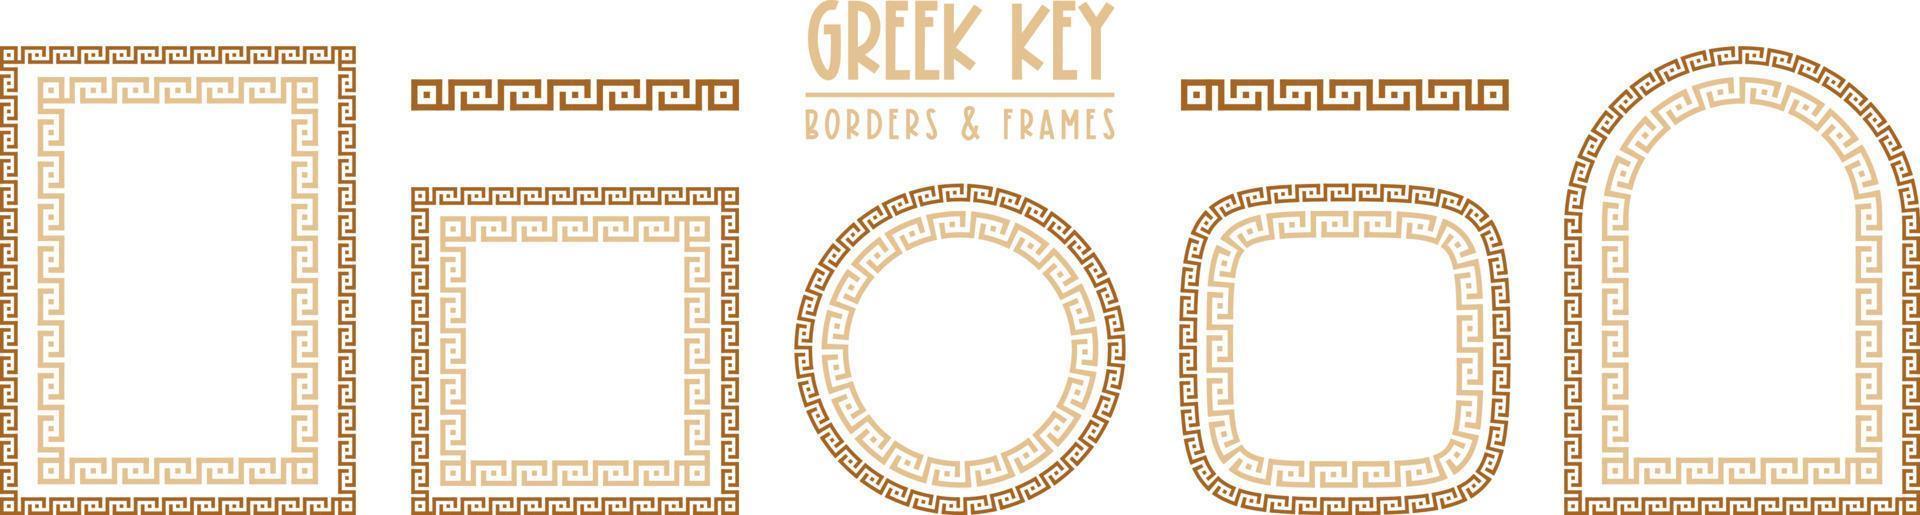 samling av grekiska nyckelramar och ramar. dekorativa antika meander vektor